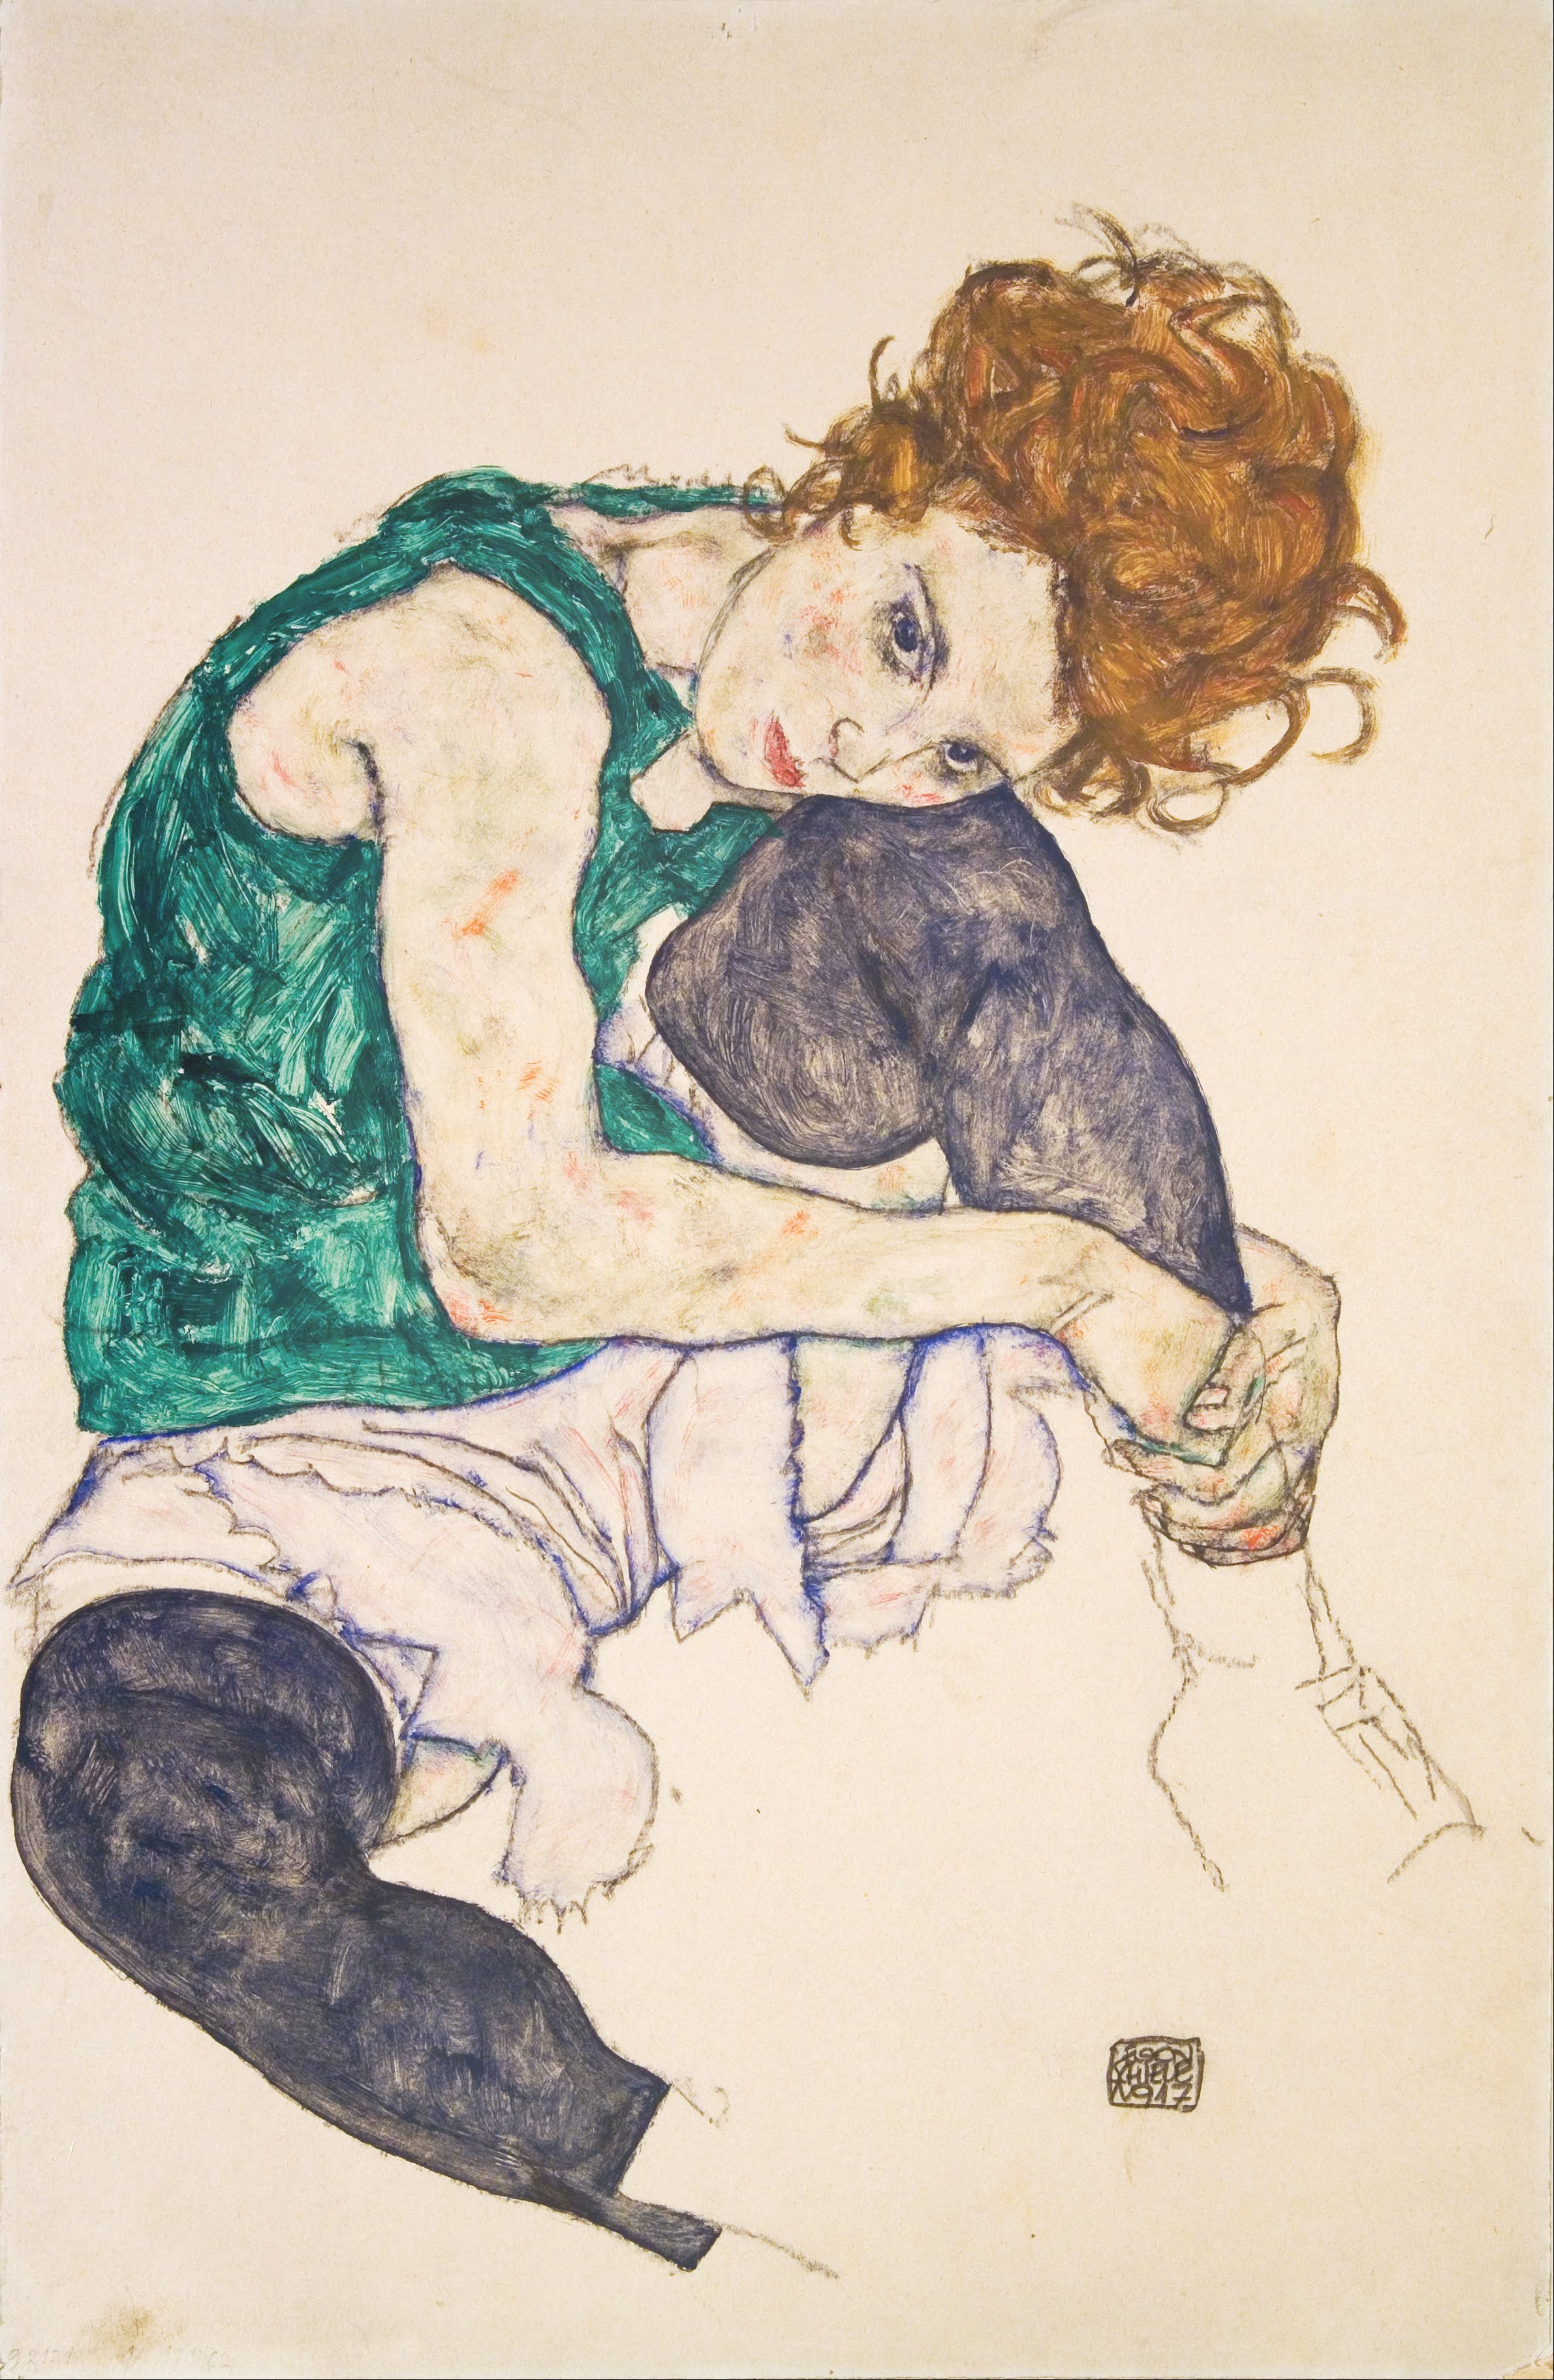 屈膝坐着的女人 by Egon Schiele - 1917 年 - 460 x 30.5 厘米 